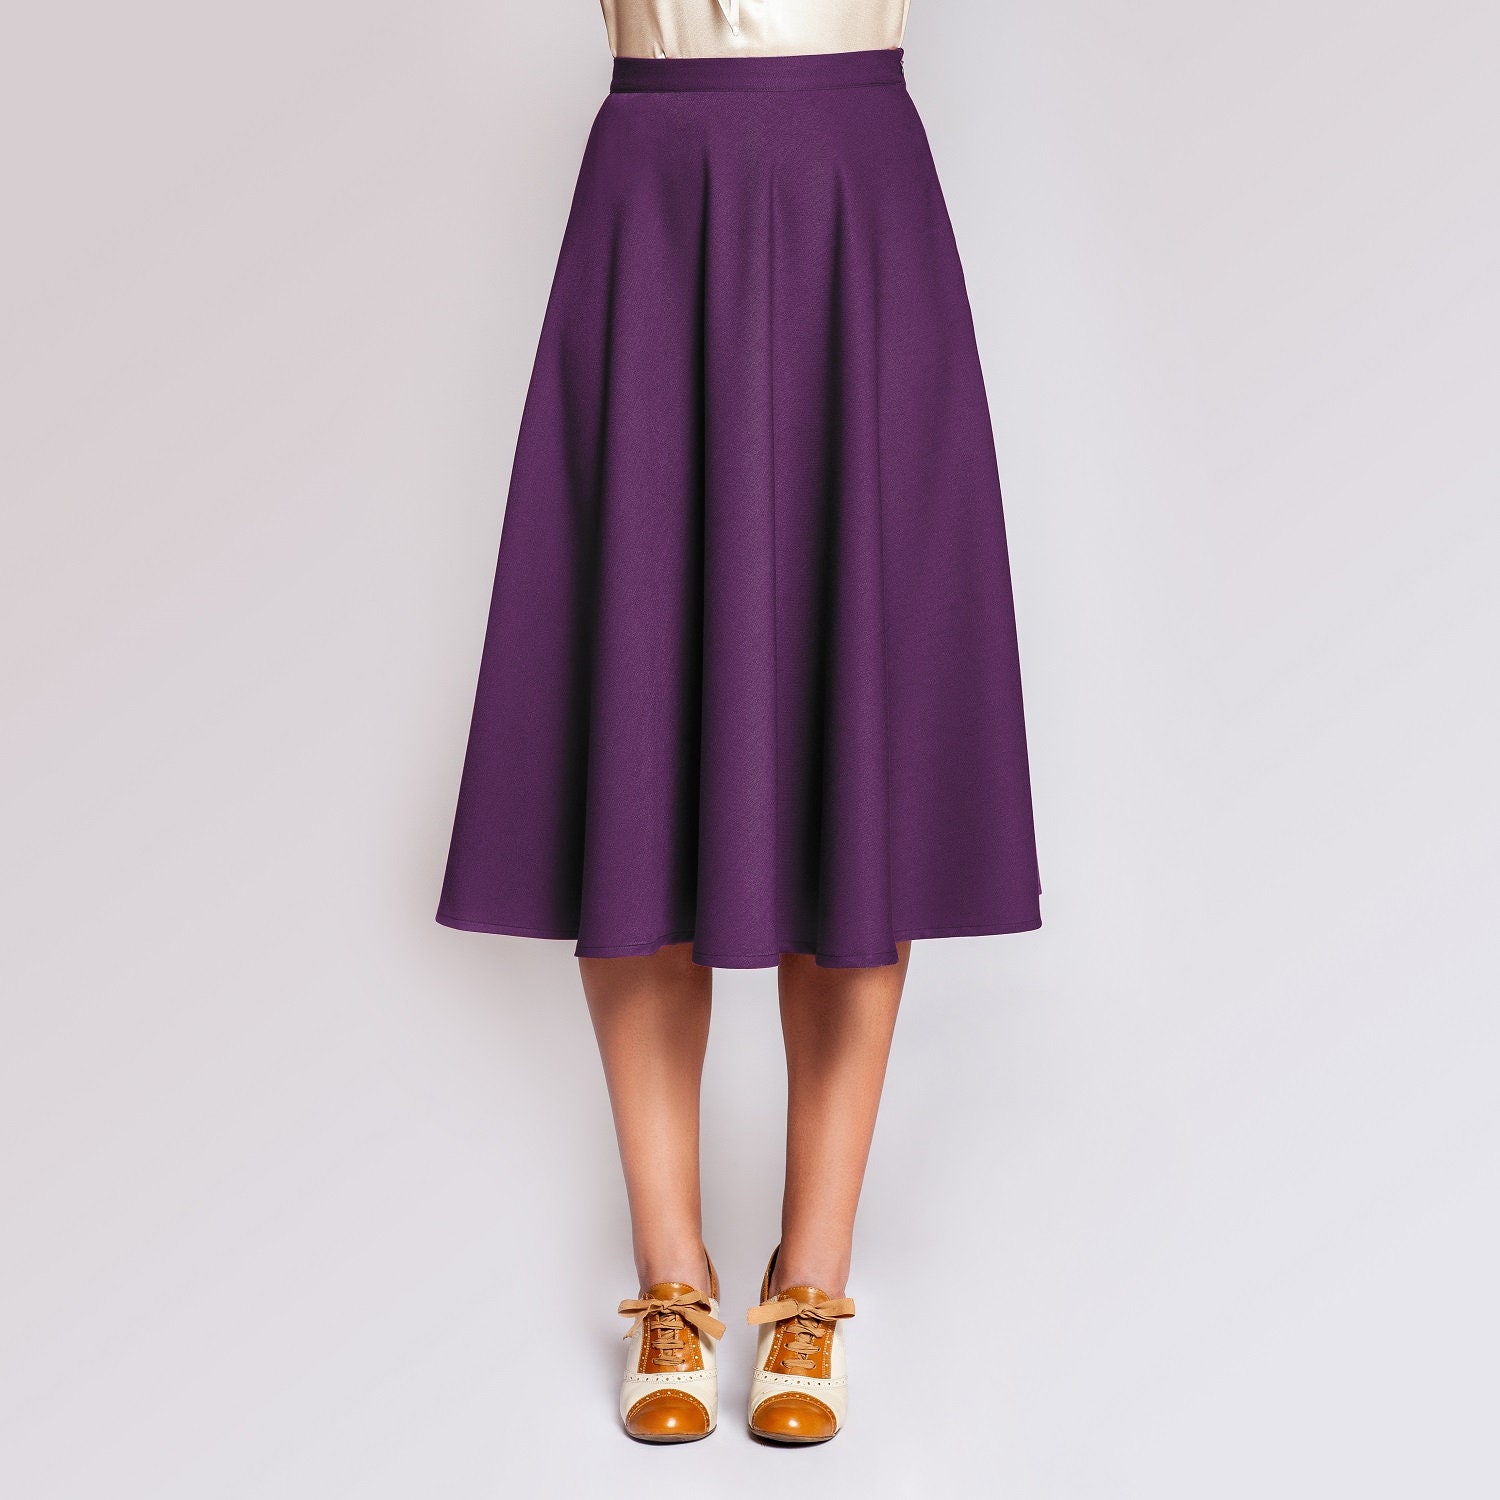 Skirt loretta swing Skirt Vintage Style - Etsy